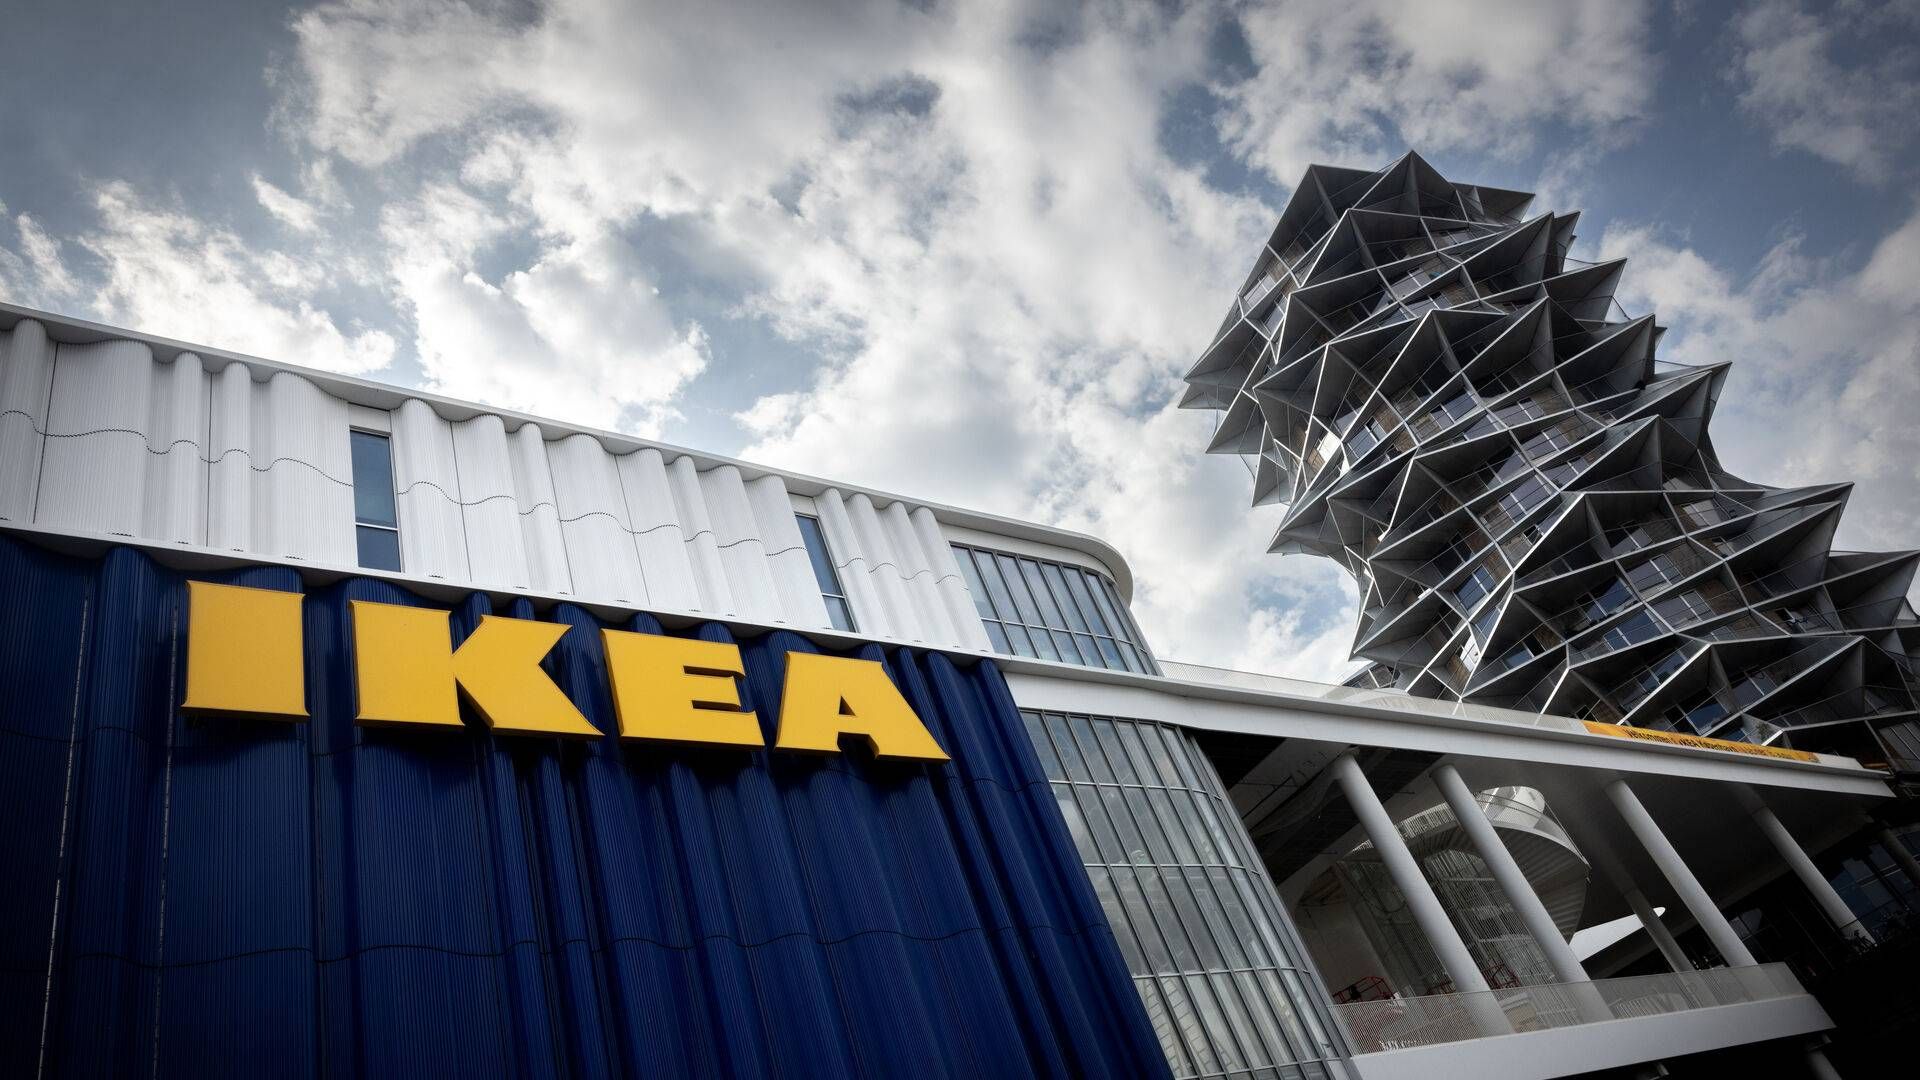 Svenske Ikea er ifølge ny undersøgelse blandt de tre bedste detailvirksomheder i Skandinavien til at binde kundeoplevelsen sammen på tværs af fysiske butikker og digitale kanaler. | Foto: Nichlas Pollier/Ritzau Scanpix